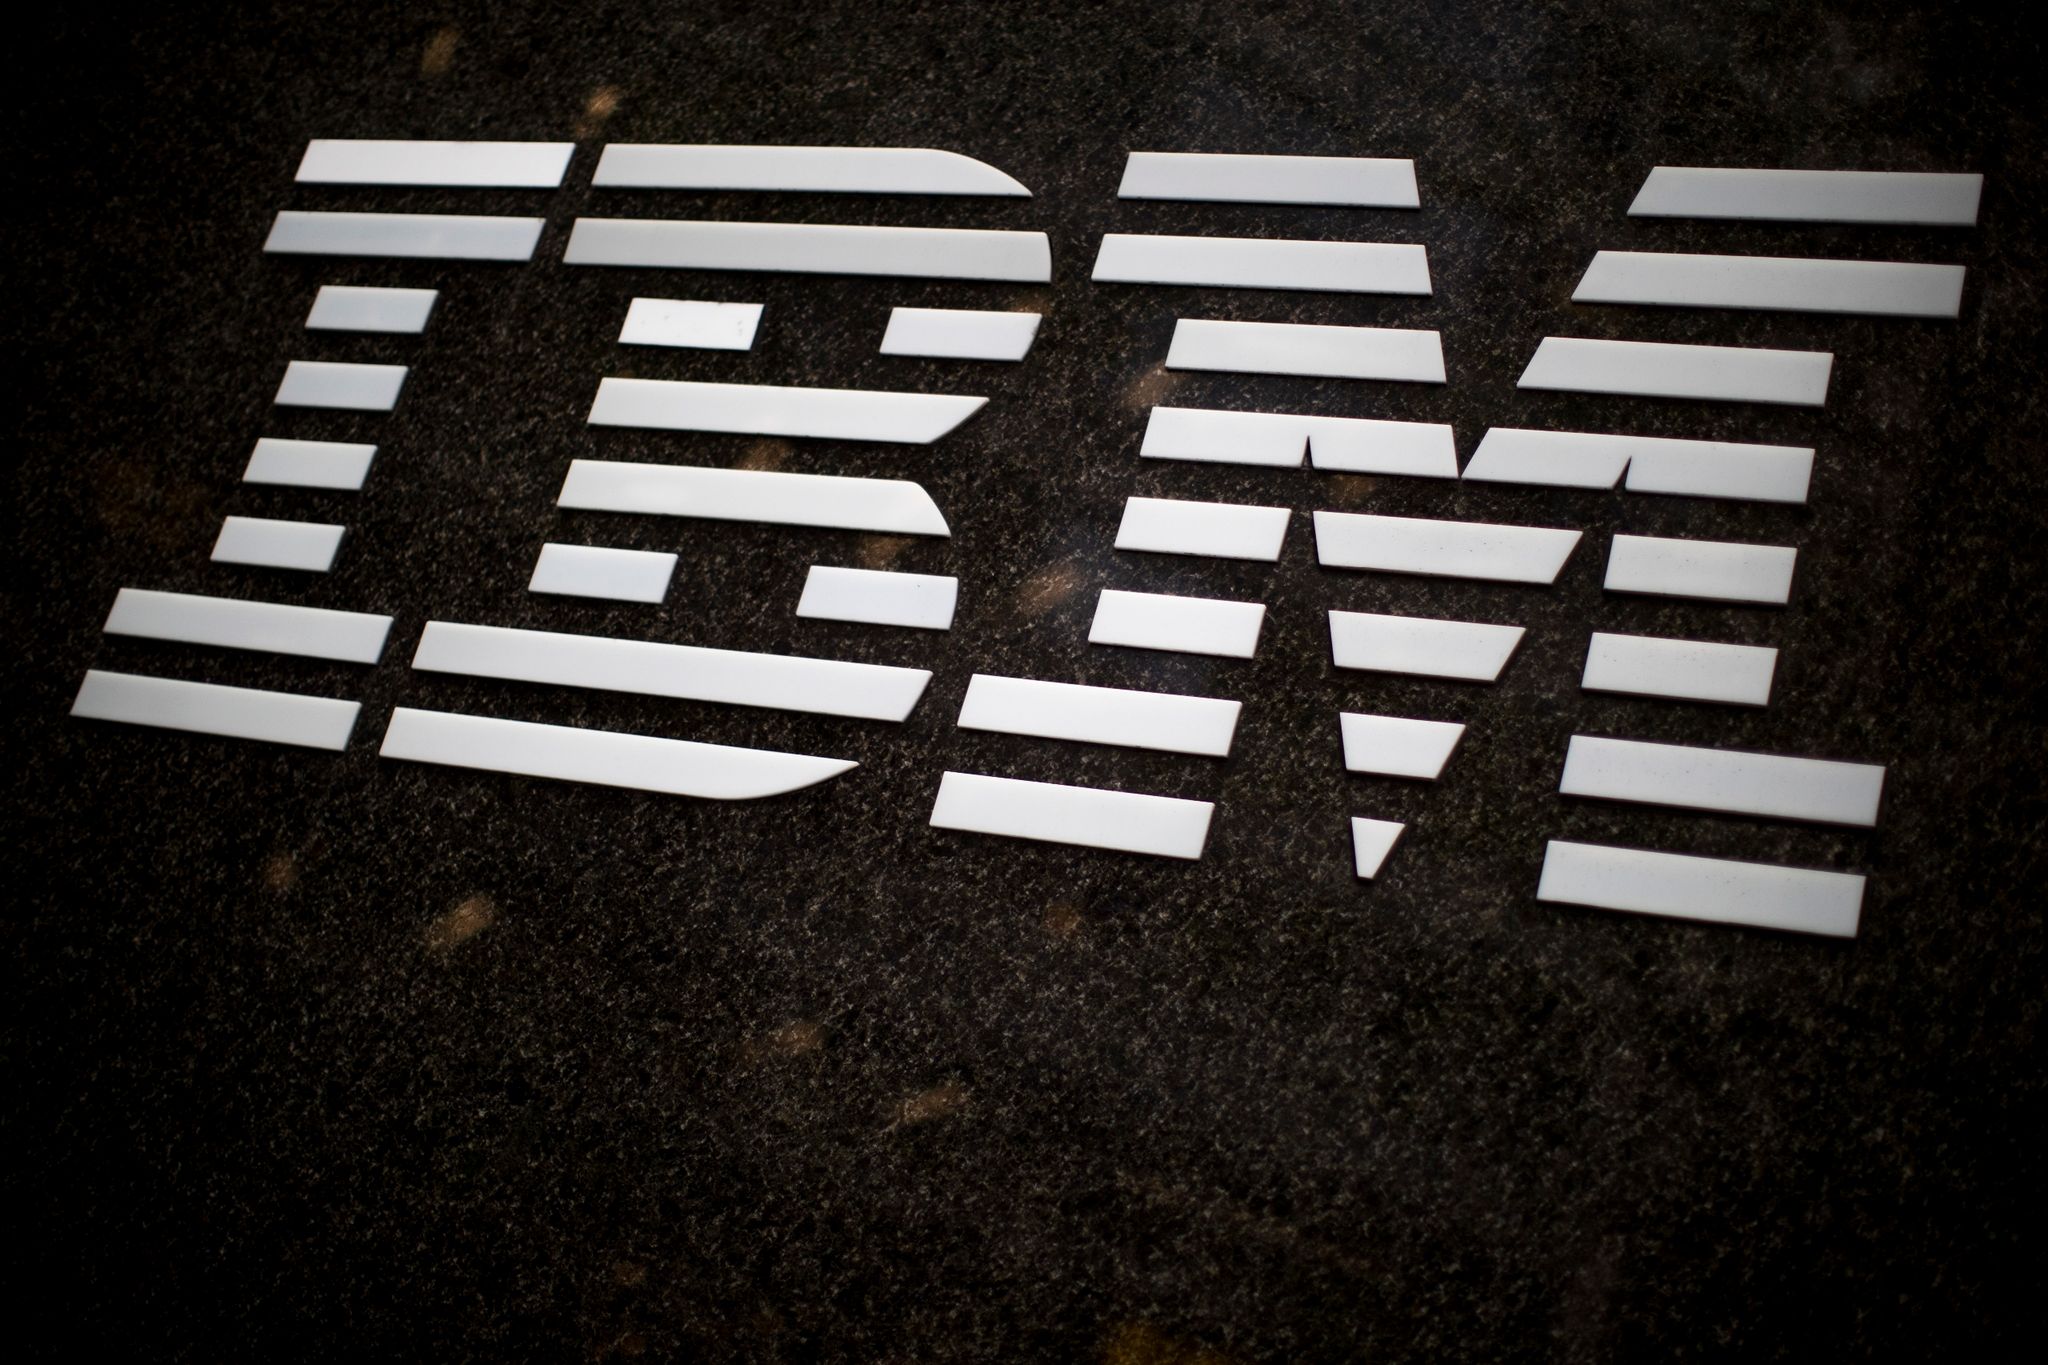 Der Computerriese IBM verzichtet zukünftig auf Werbung via X. (© Mary Altaffer/AP/dpa)